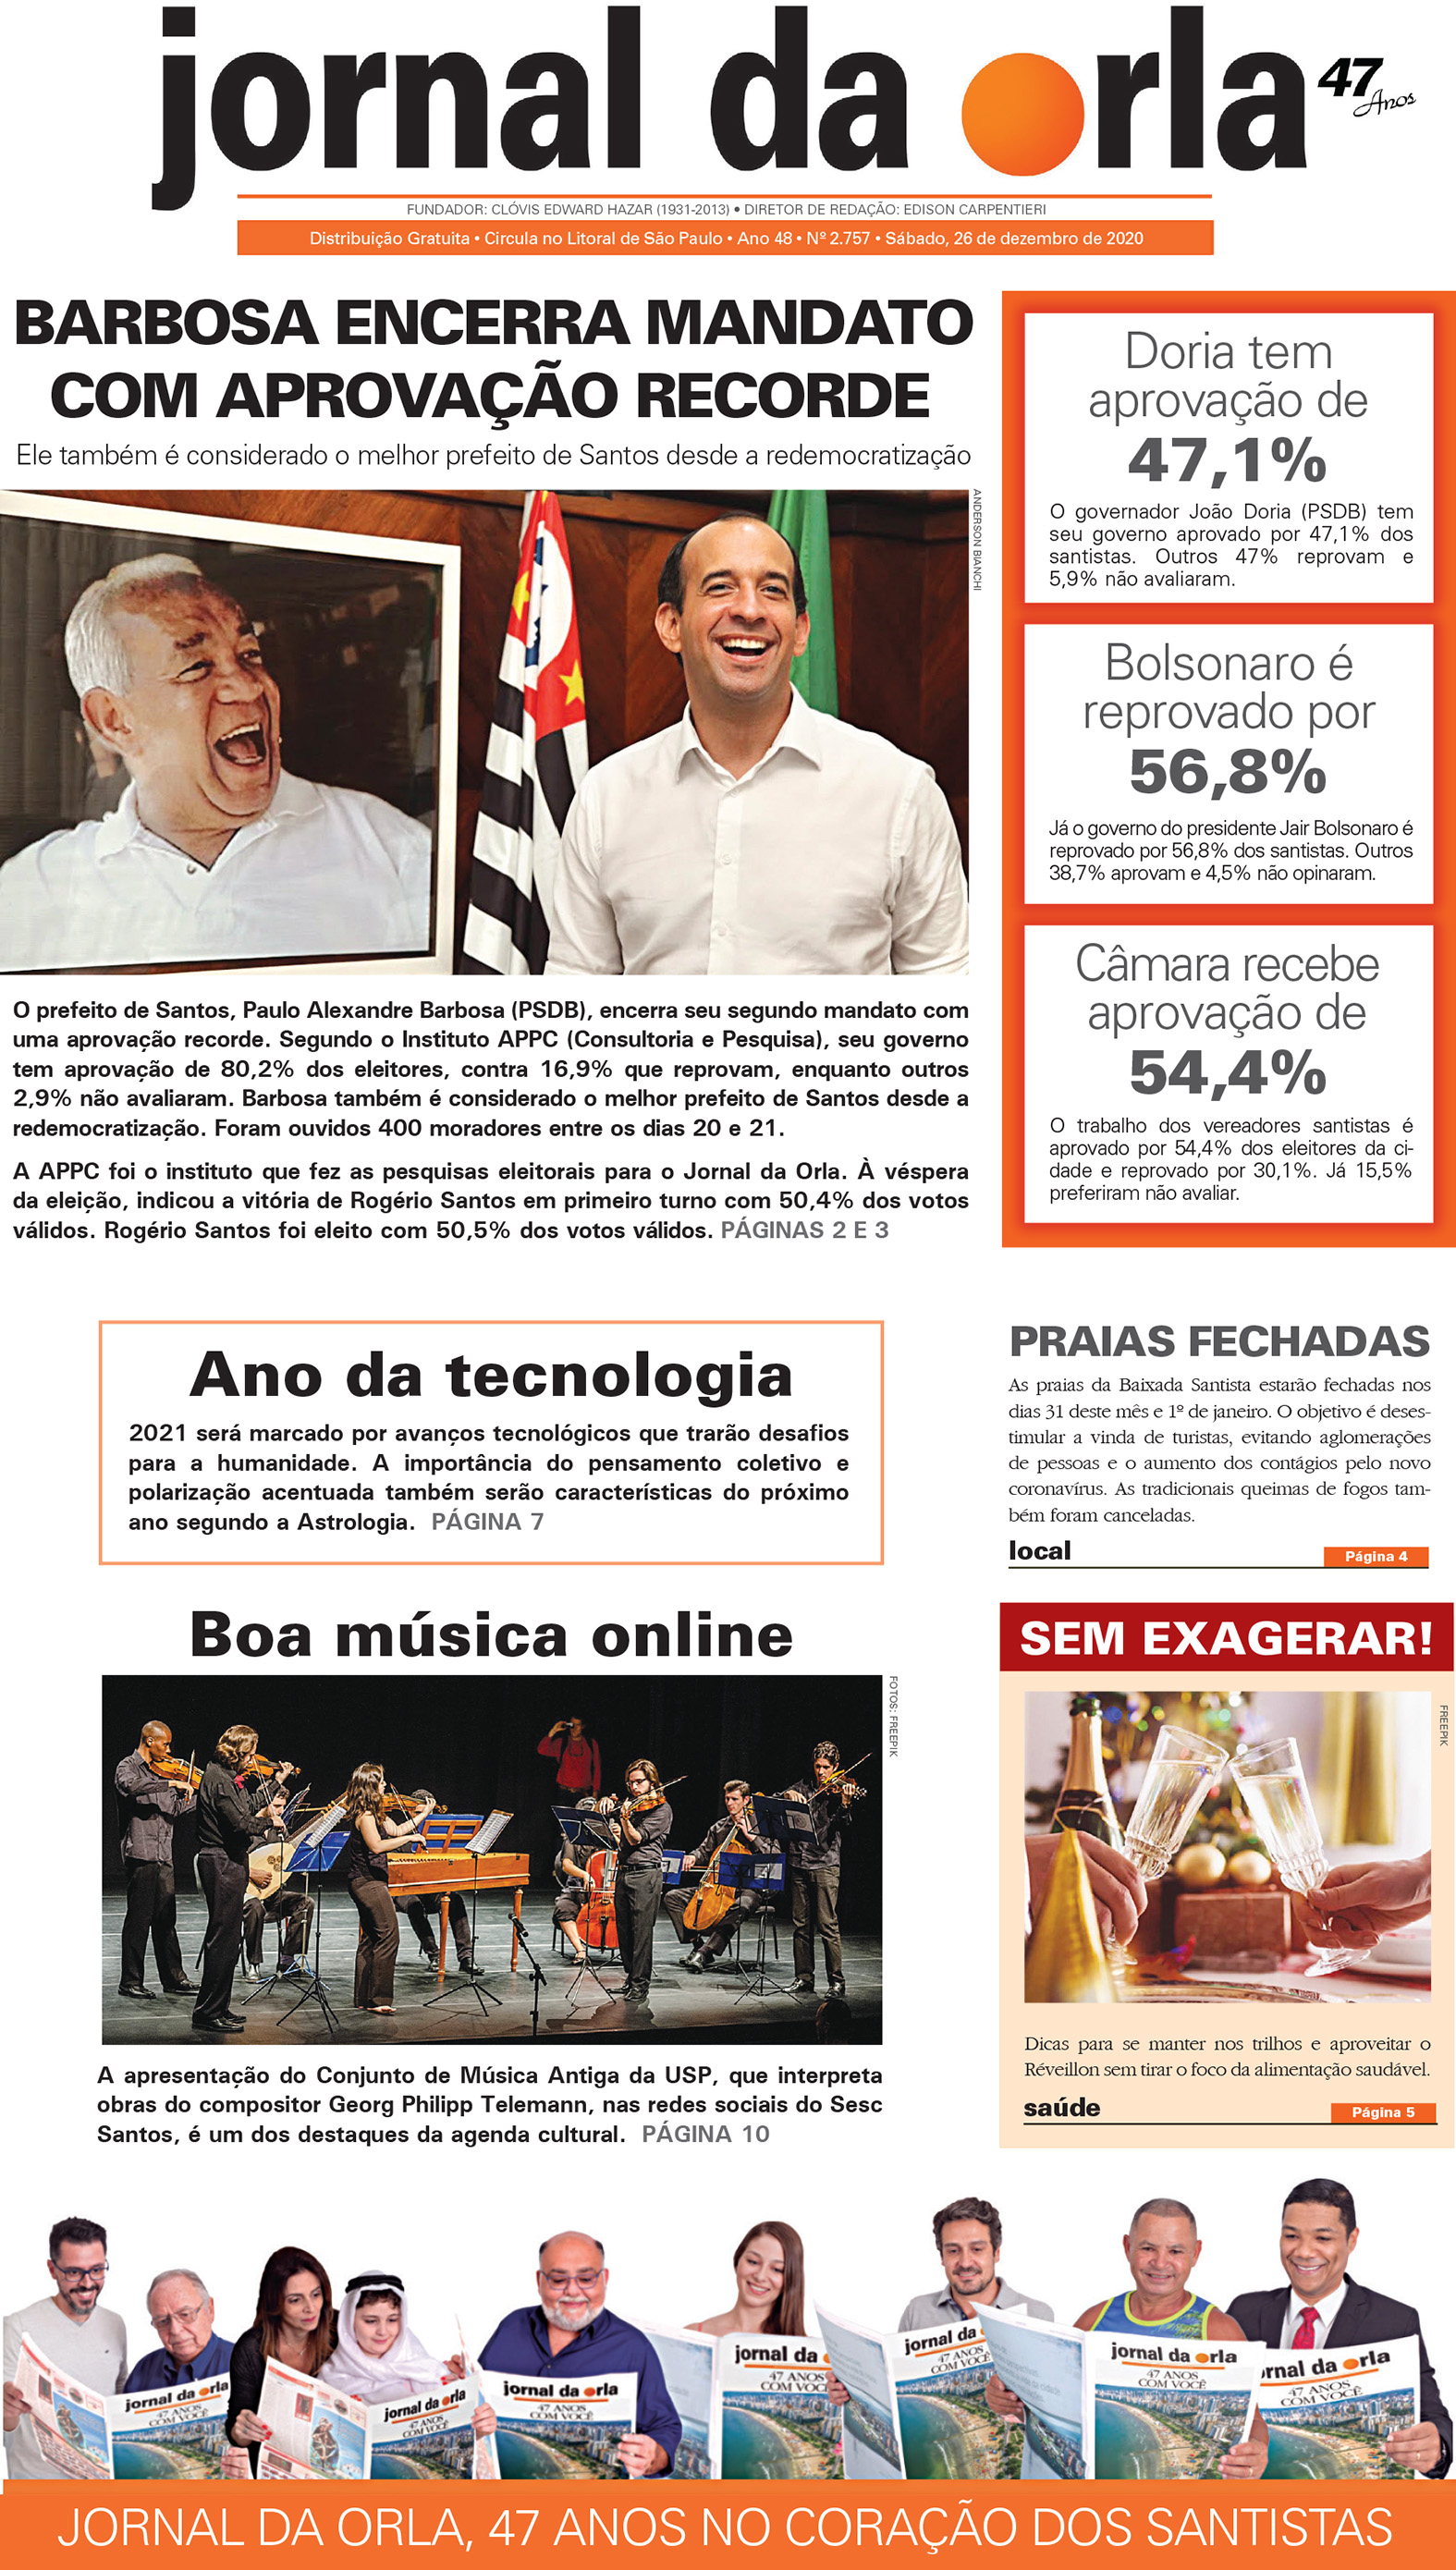 26/12/2020 | Jornal da Orla